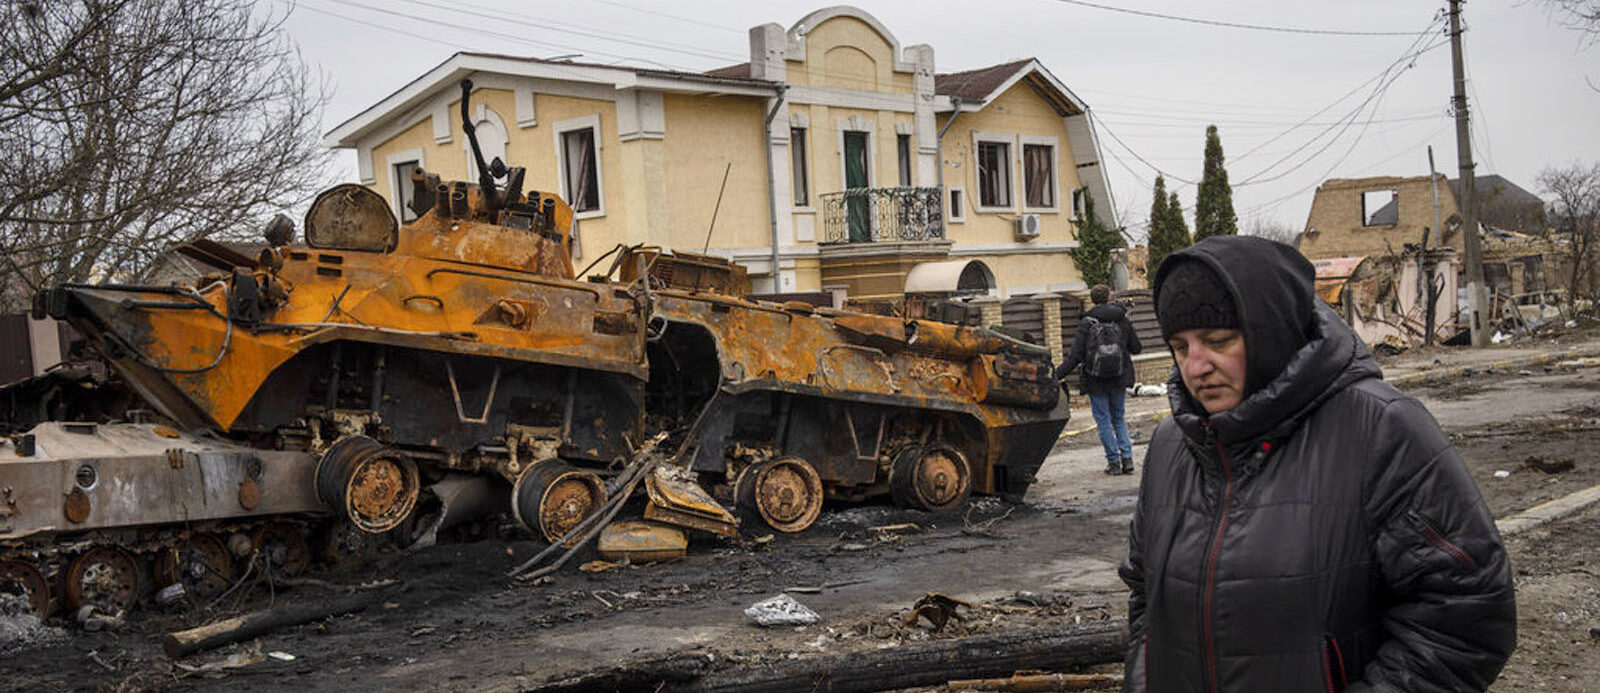 Une scène de destruction à Boutcha, en Ukraine, en avril 2022 | © Manhhai/Flickr/CC BY 2.0